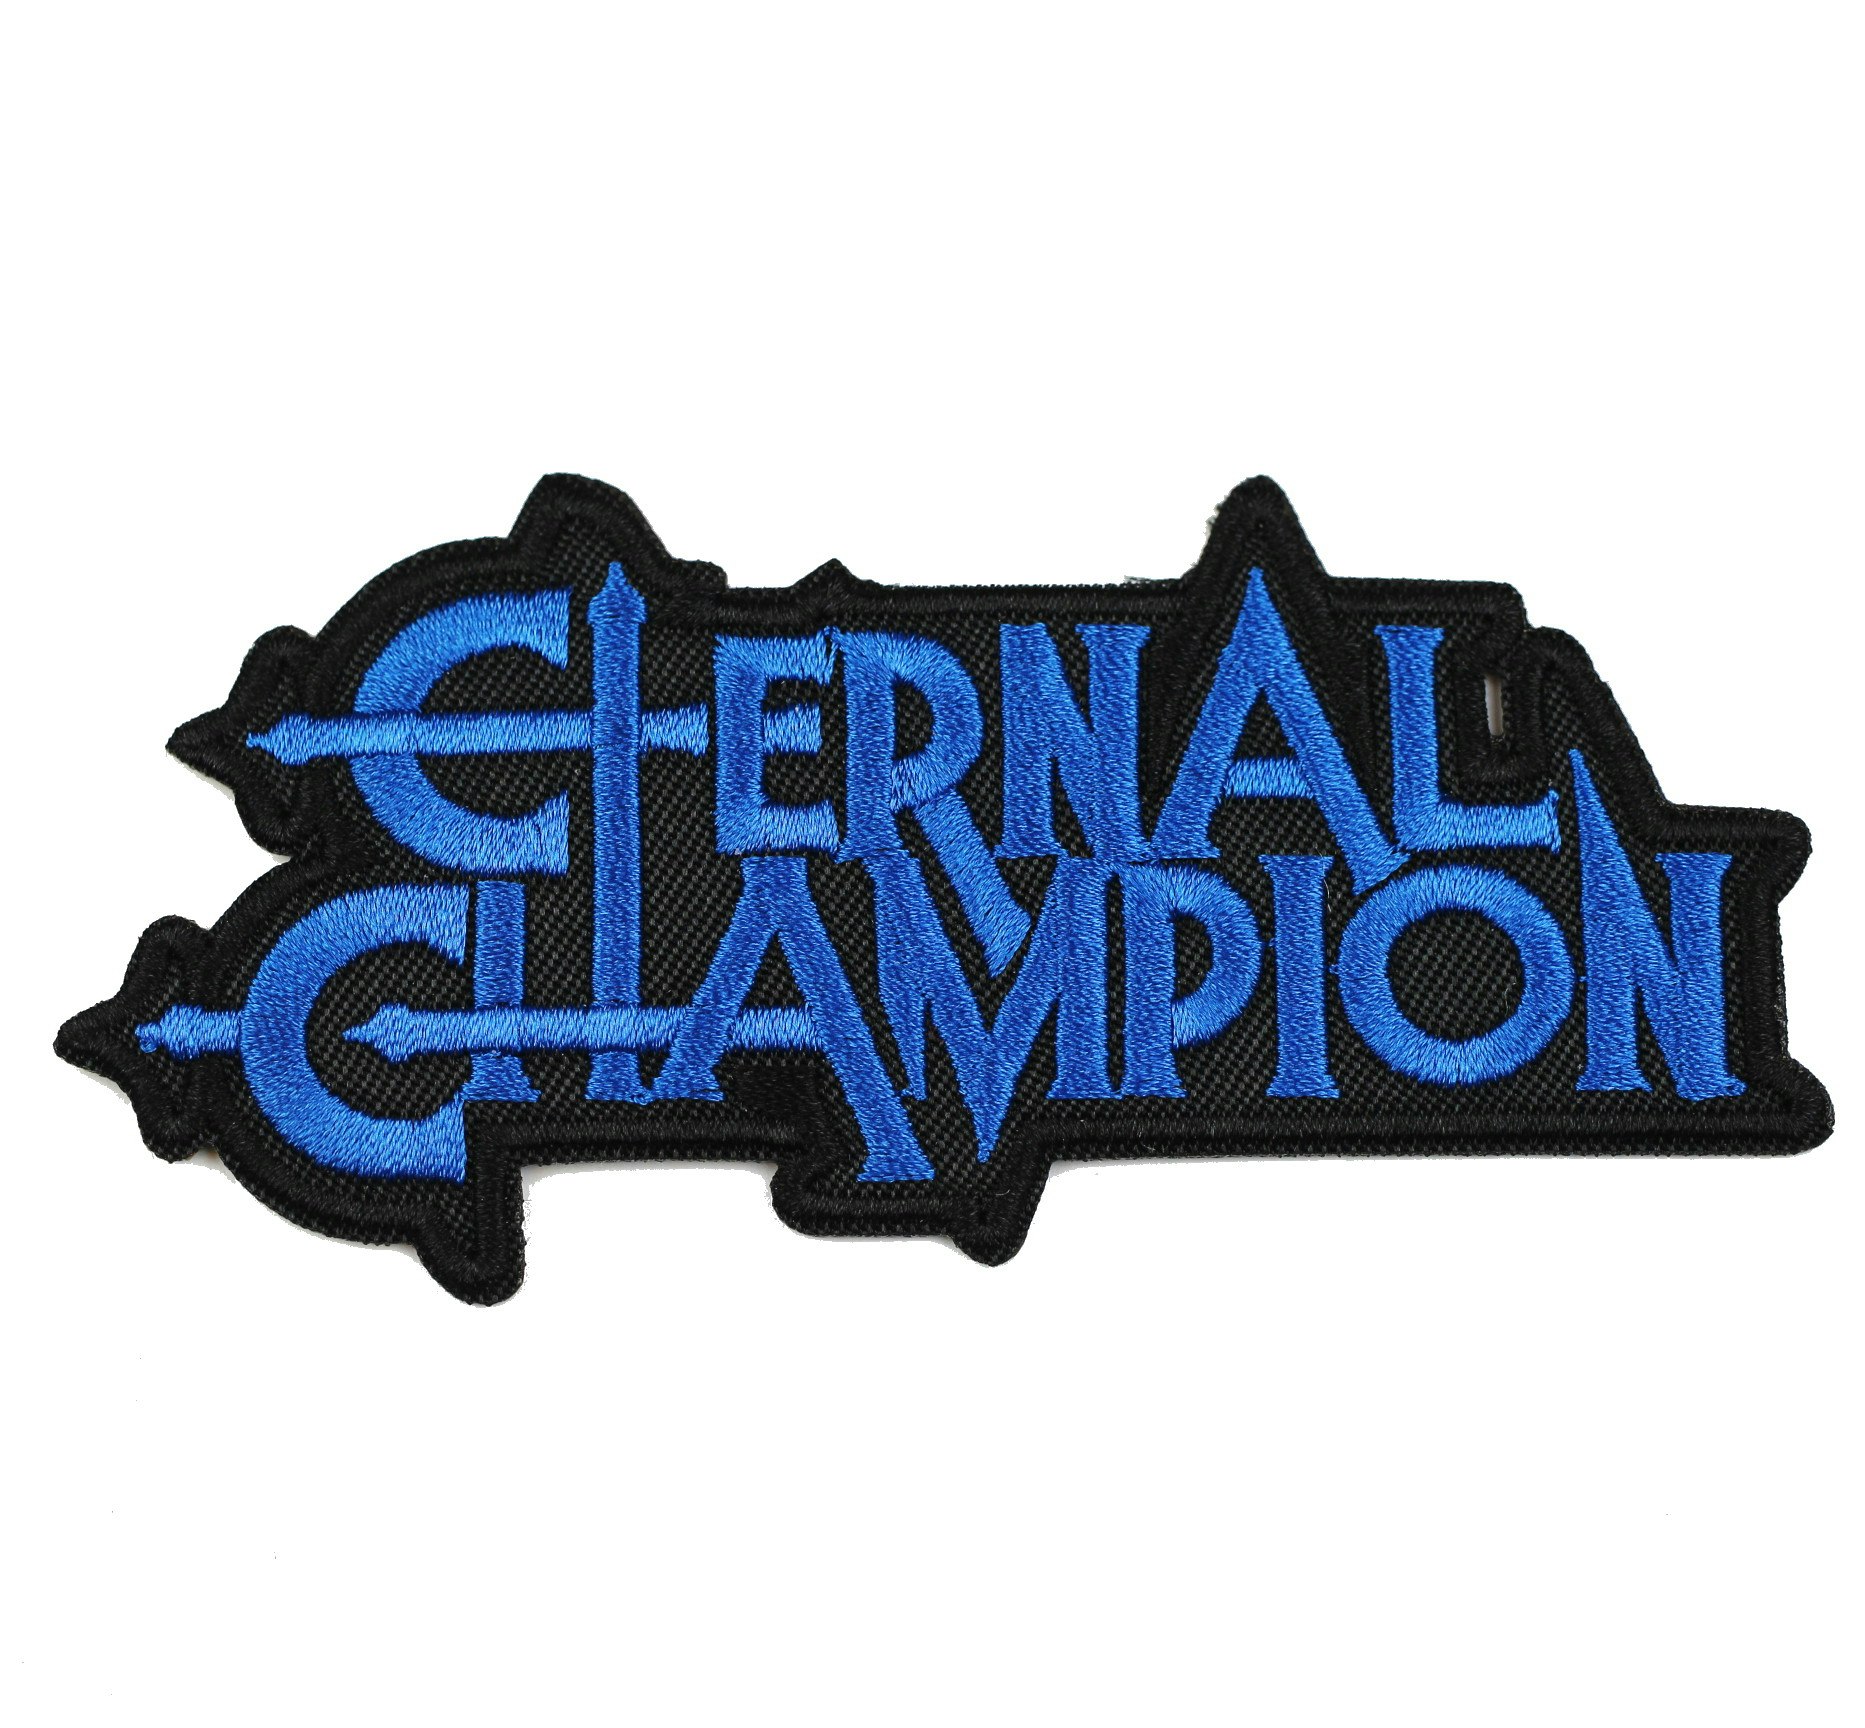 Eternal champion logo patch